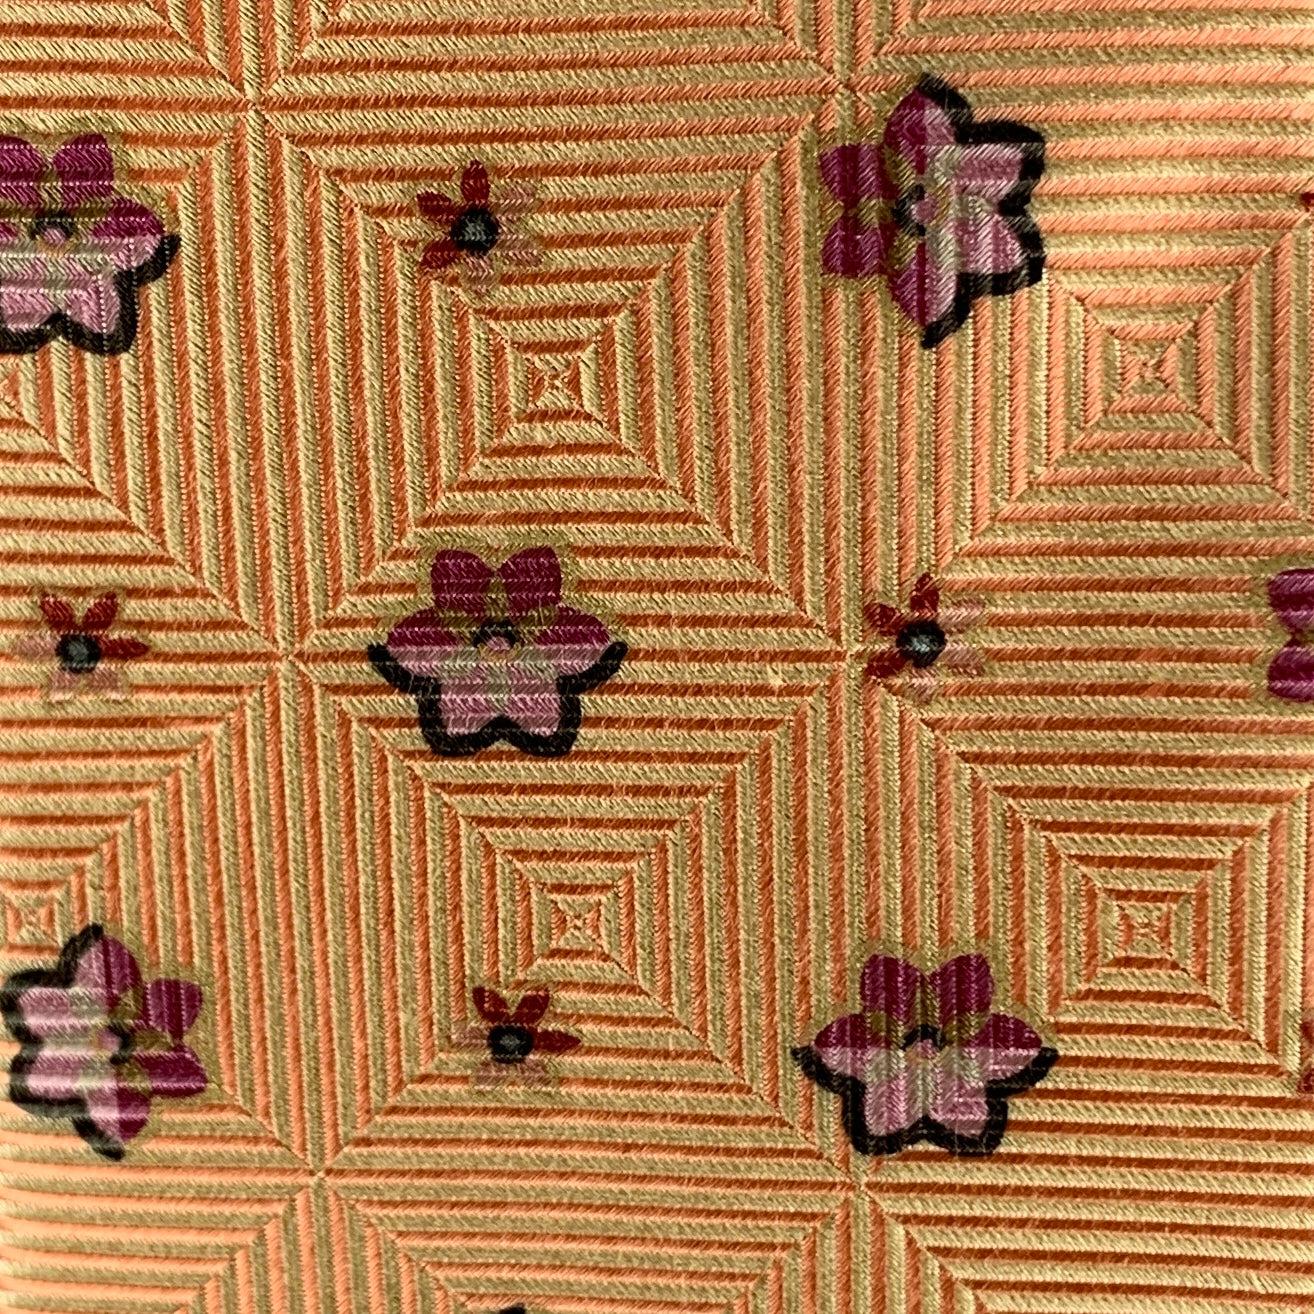 Klassische Krawatte von ERMENEGILDO ZEGNA mit orangefarbenen Rautenstreifen und rosa Blumenmotiven. 100% Seide. Hergestellt in Italien.
Sehr guter gebrauchter Zustand.
 

Abmessungen: 
  Breite: 3 Zoll Länge: 58 Zoll 




  
  
 
Sui